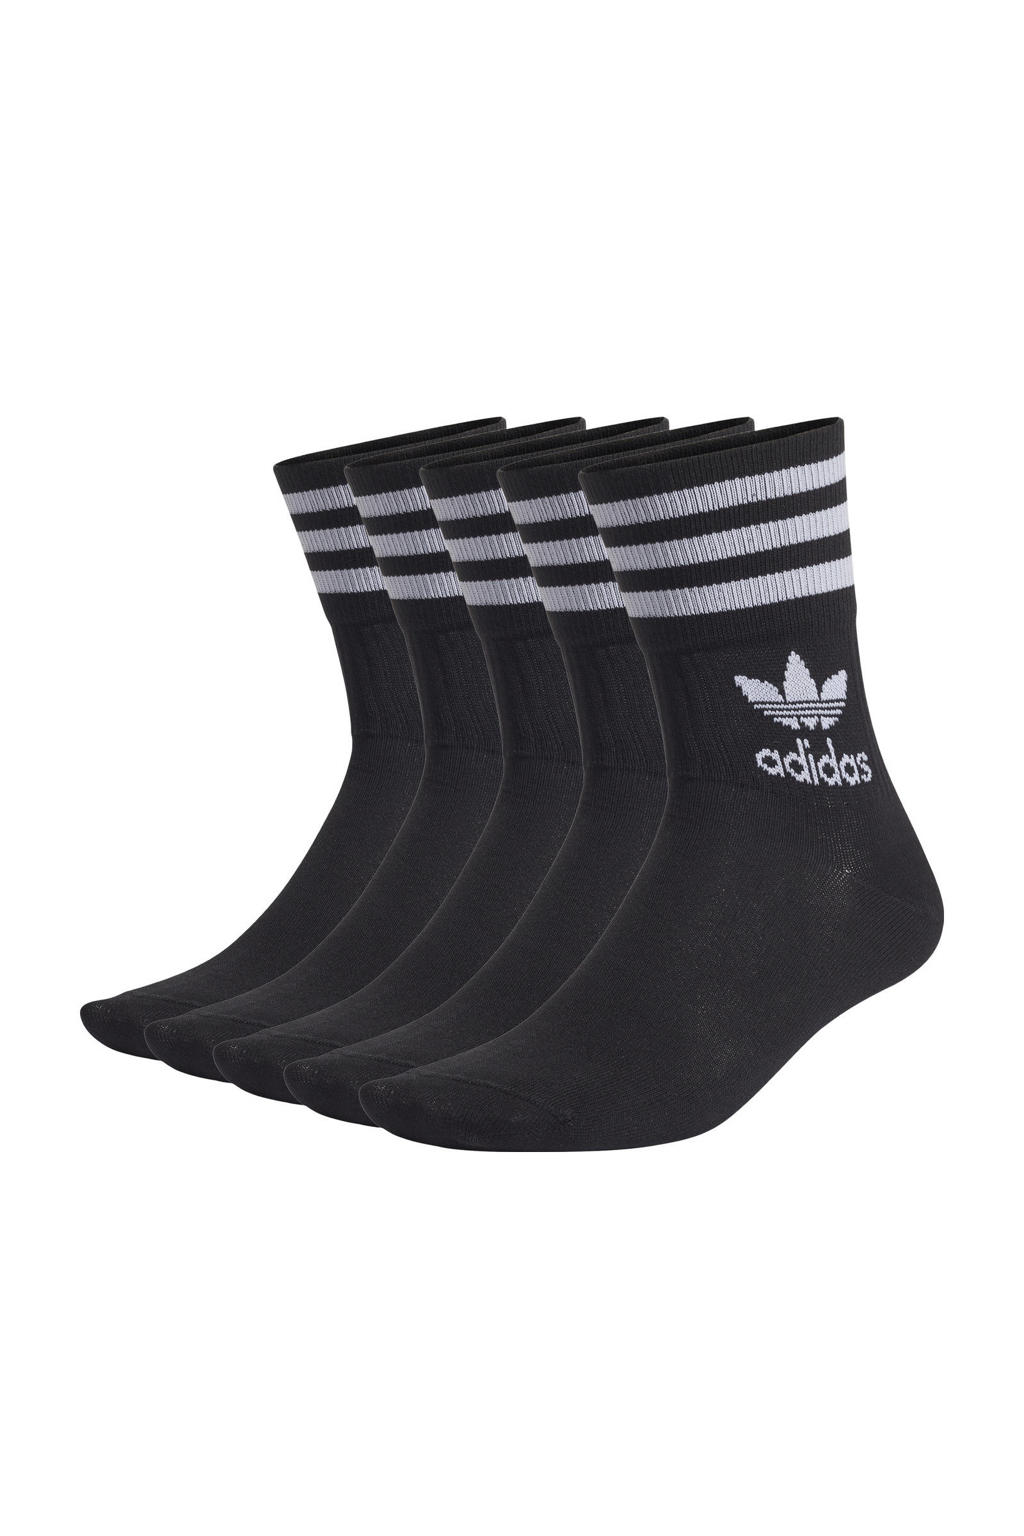 adidas Originals Adicolor sokken - set van 5 zwart